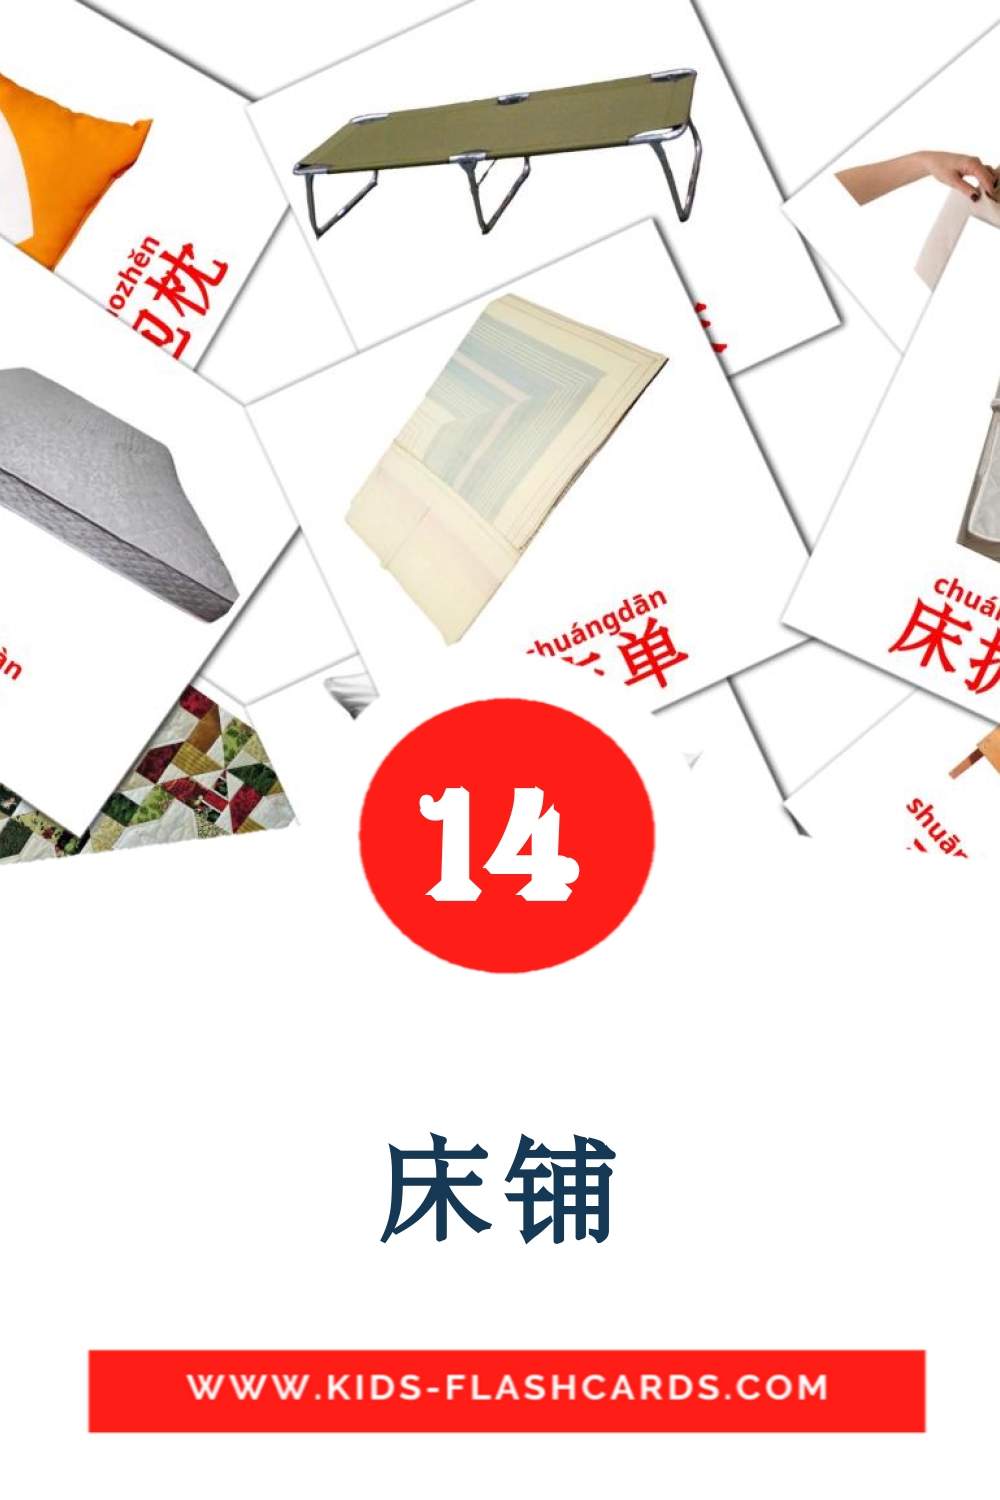 14 carte illustrate di 床铺 per la scuola materna in cinese(semplificato)